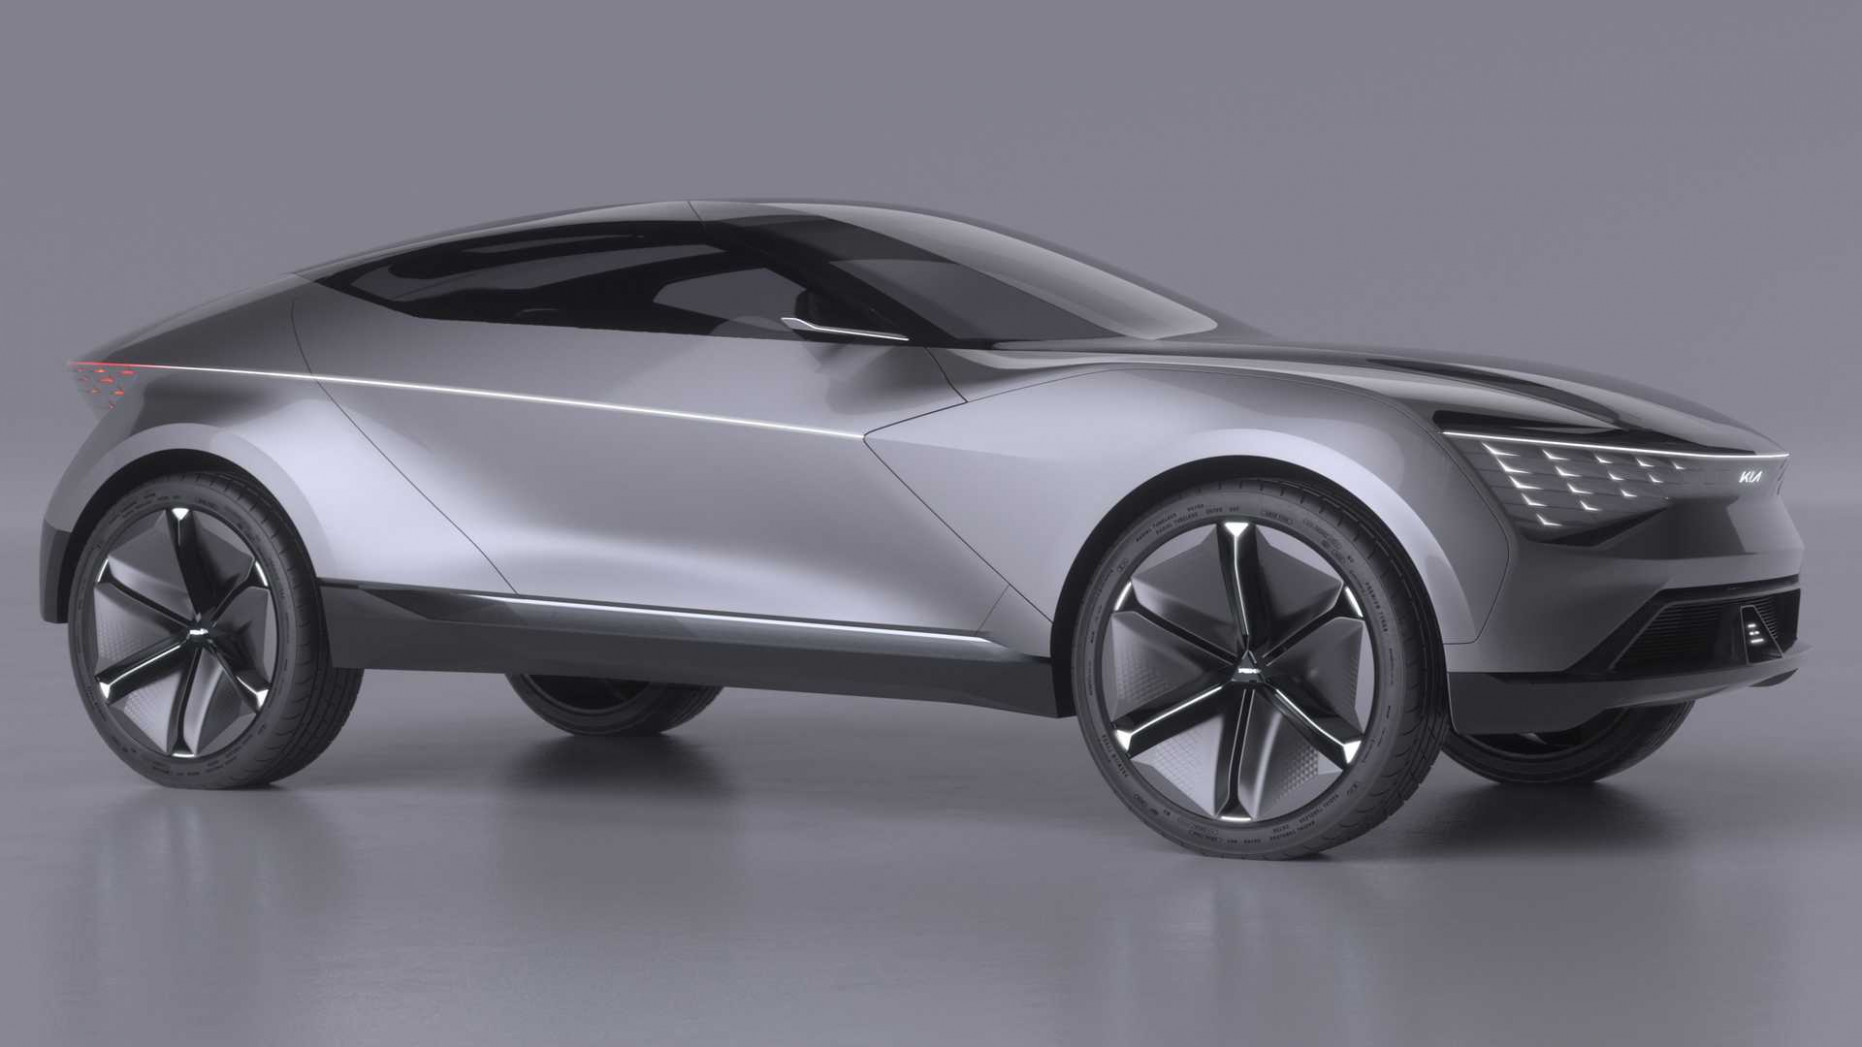 New Concept Kia Sportage 2022 Model